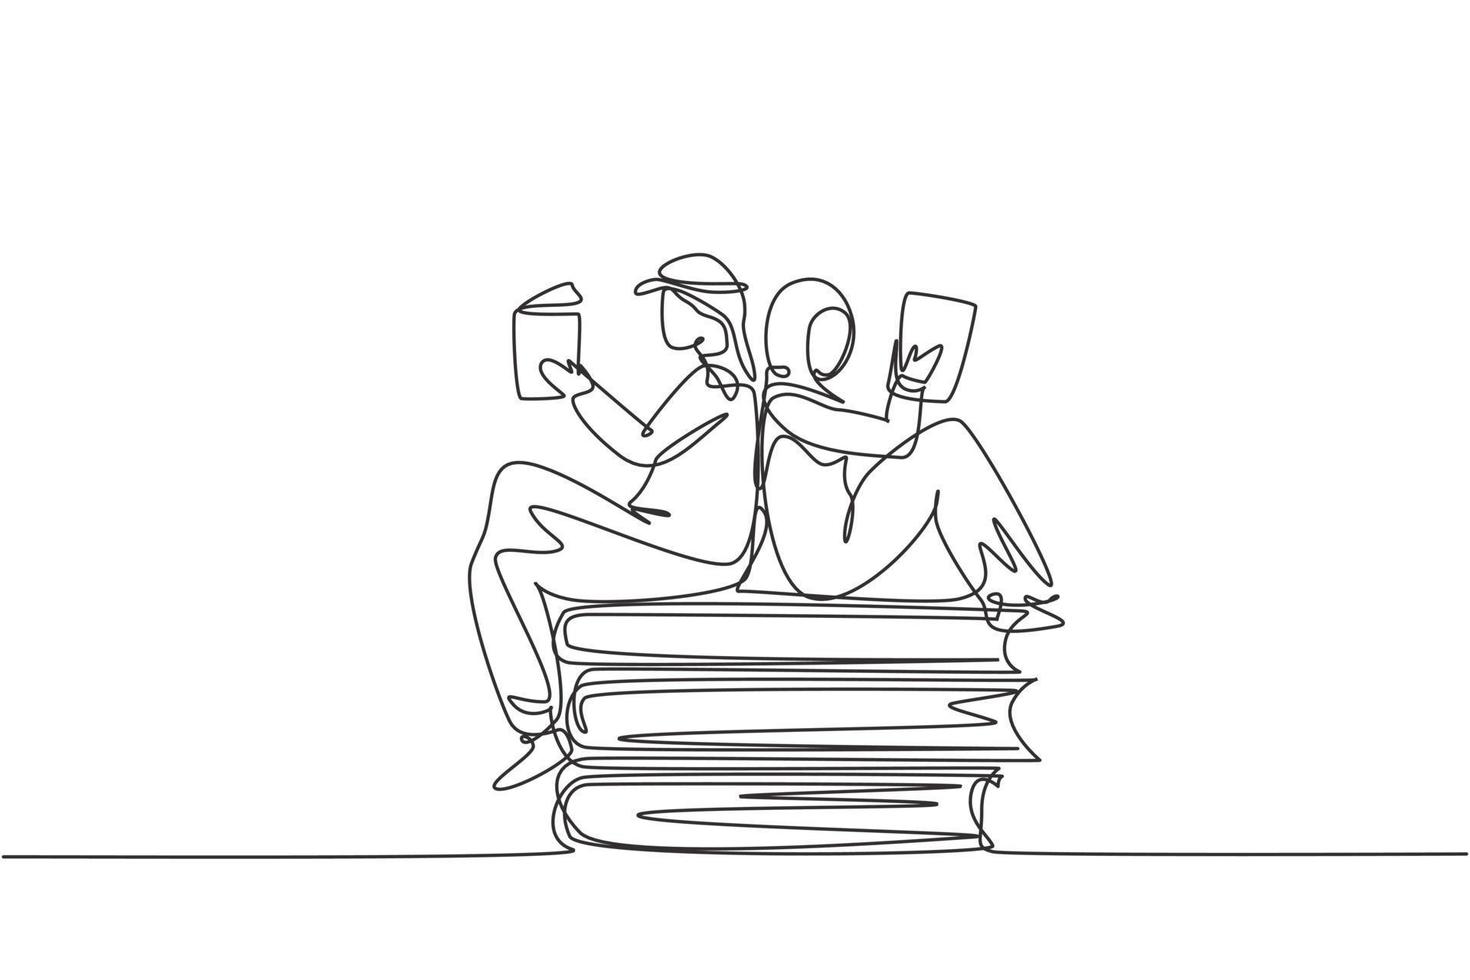 disegno di una sola linea studenti arabi donna e uomo che leggono, imparano e si siedono su grandi libri. studiare in biblioteca. appassionati o amanti della letteratura. illustrazione vettoriale grafica di disegno di disegno di linea continua